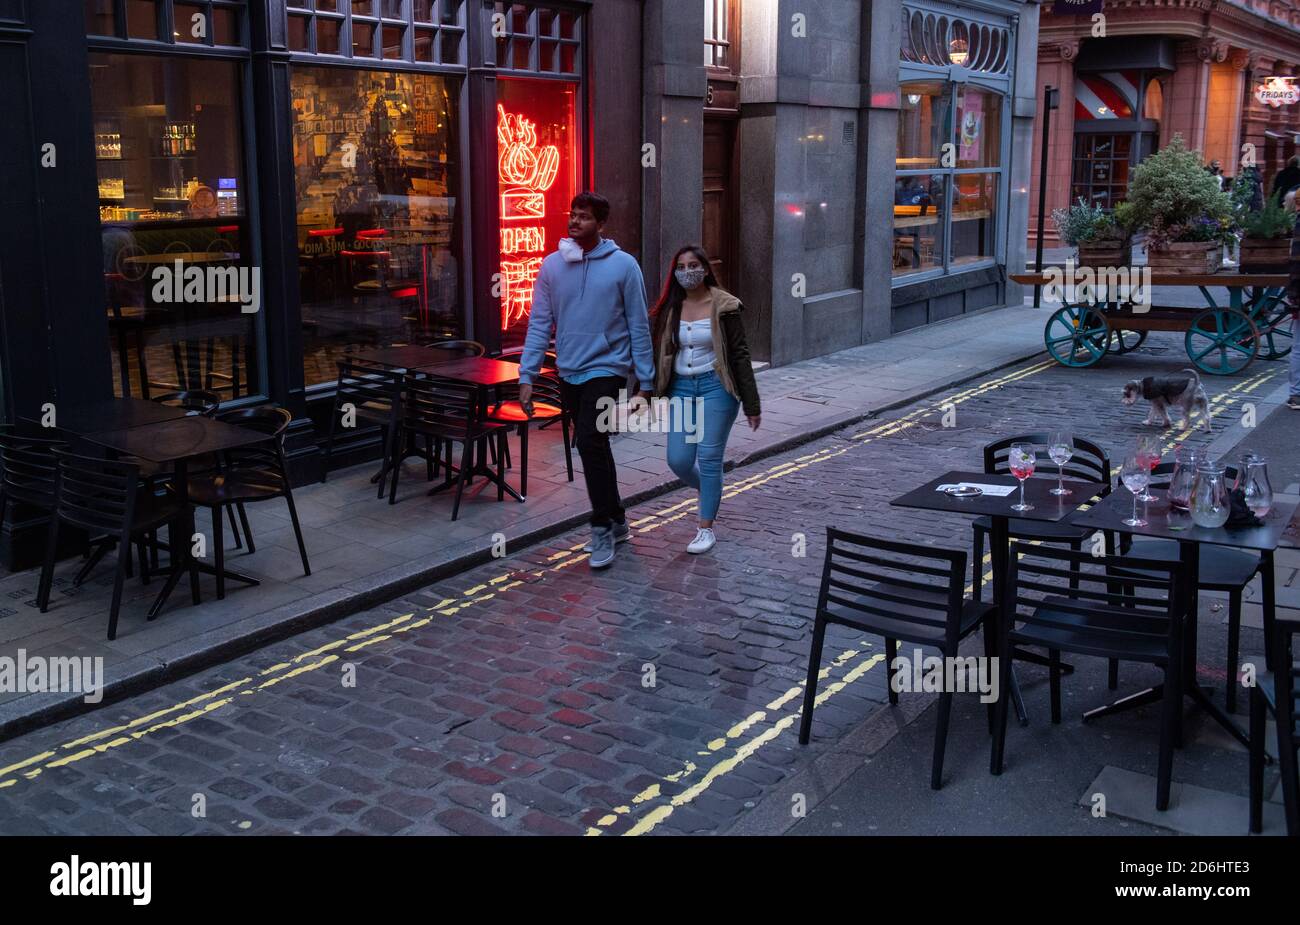 Am ersten Tag, nachdem die Stadt in Tier-2-Beschränkungen gesetzt wurde, um die Ausbreitung des Coronavirus einzudämmen, passieren Menschen leere Tische vor einem Restaurant in Covent Garden, London. Stockfoto